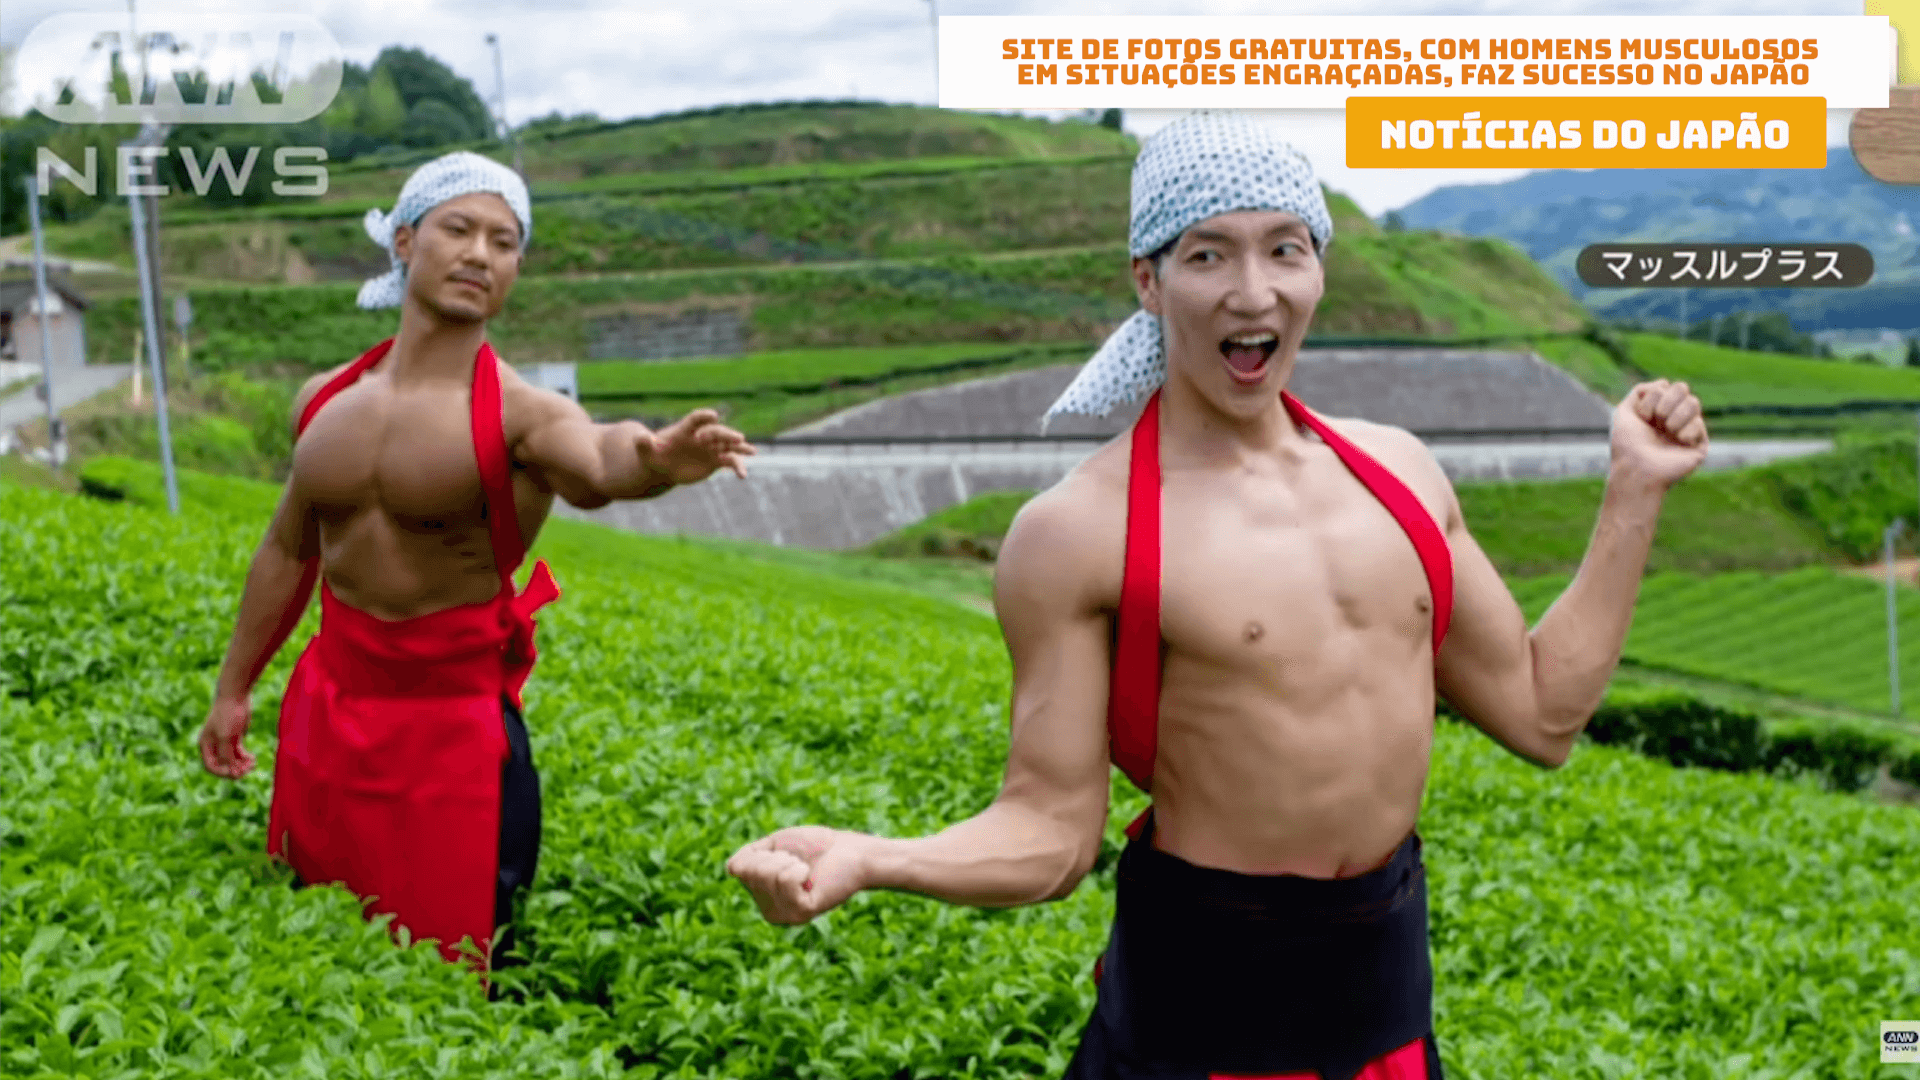 Site de fotos gratuitas, com homens musculosos em situações engraçadas, faz sucesso no Japão